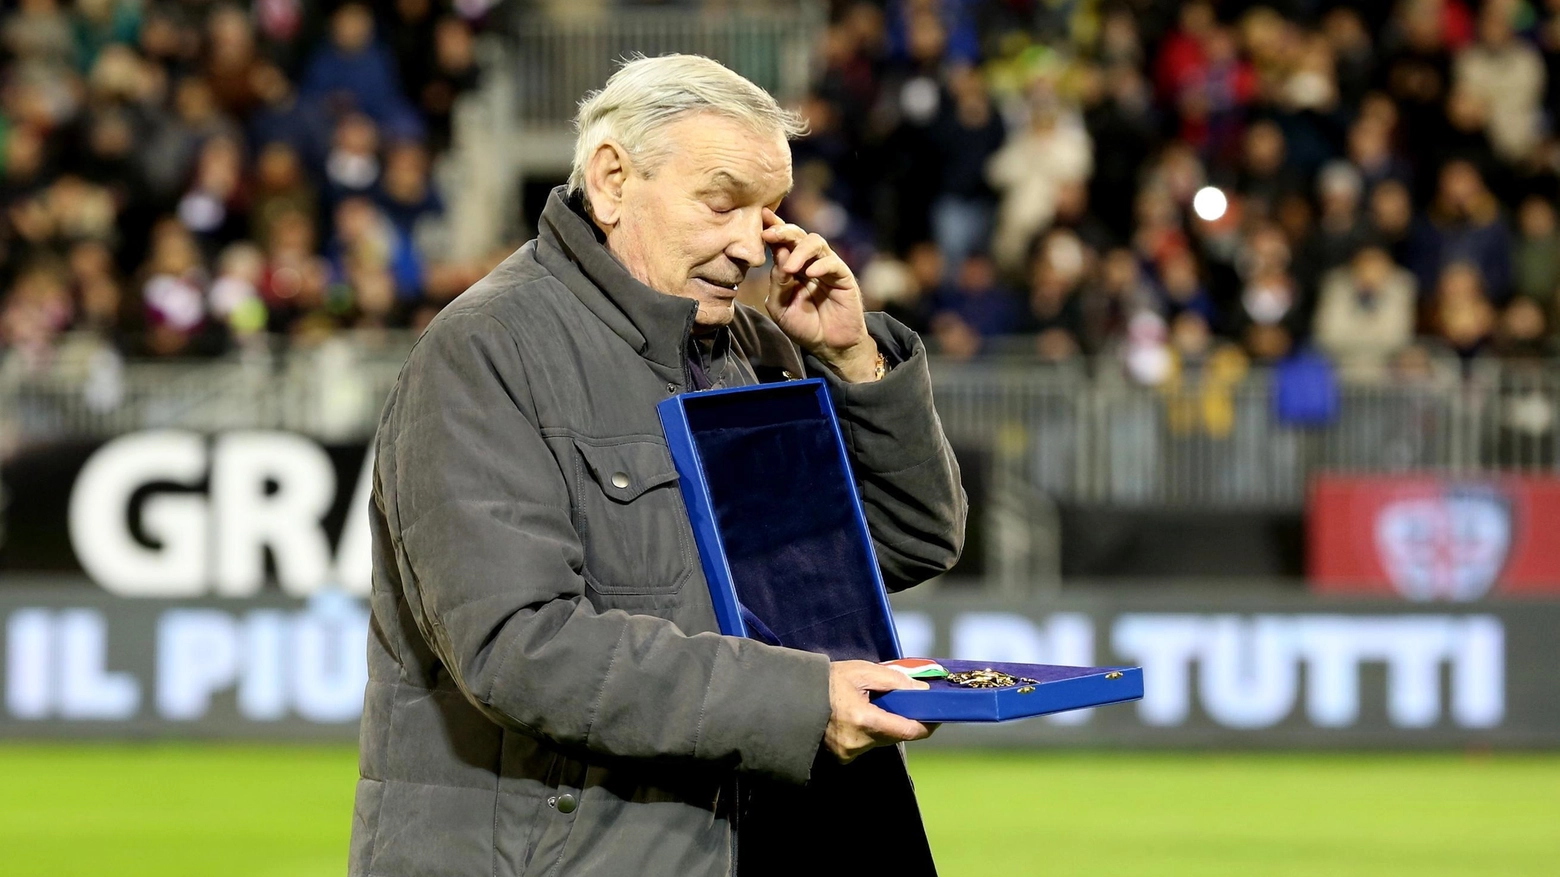 Addio Gigi Riva, Rombo di tuono è morto all’età di 79 anni, va via una leggenda del calcio italiano